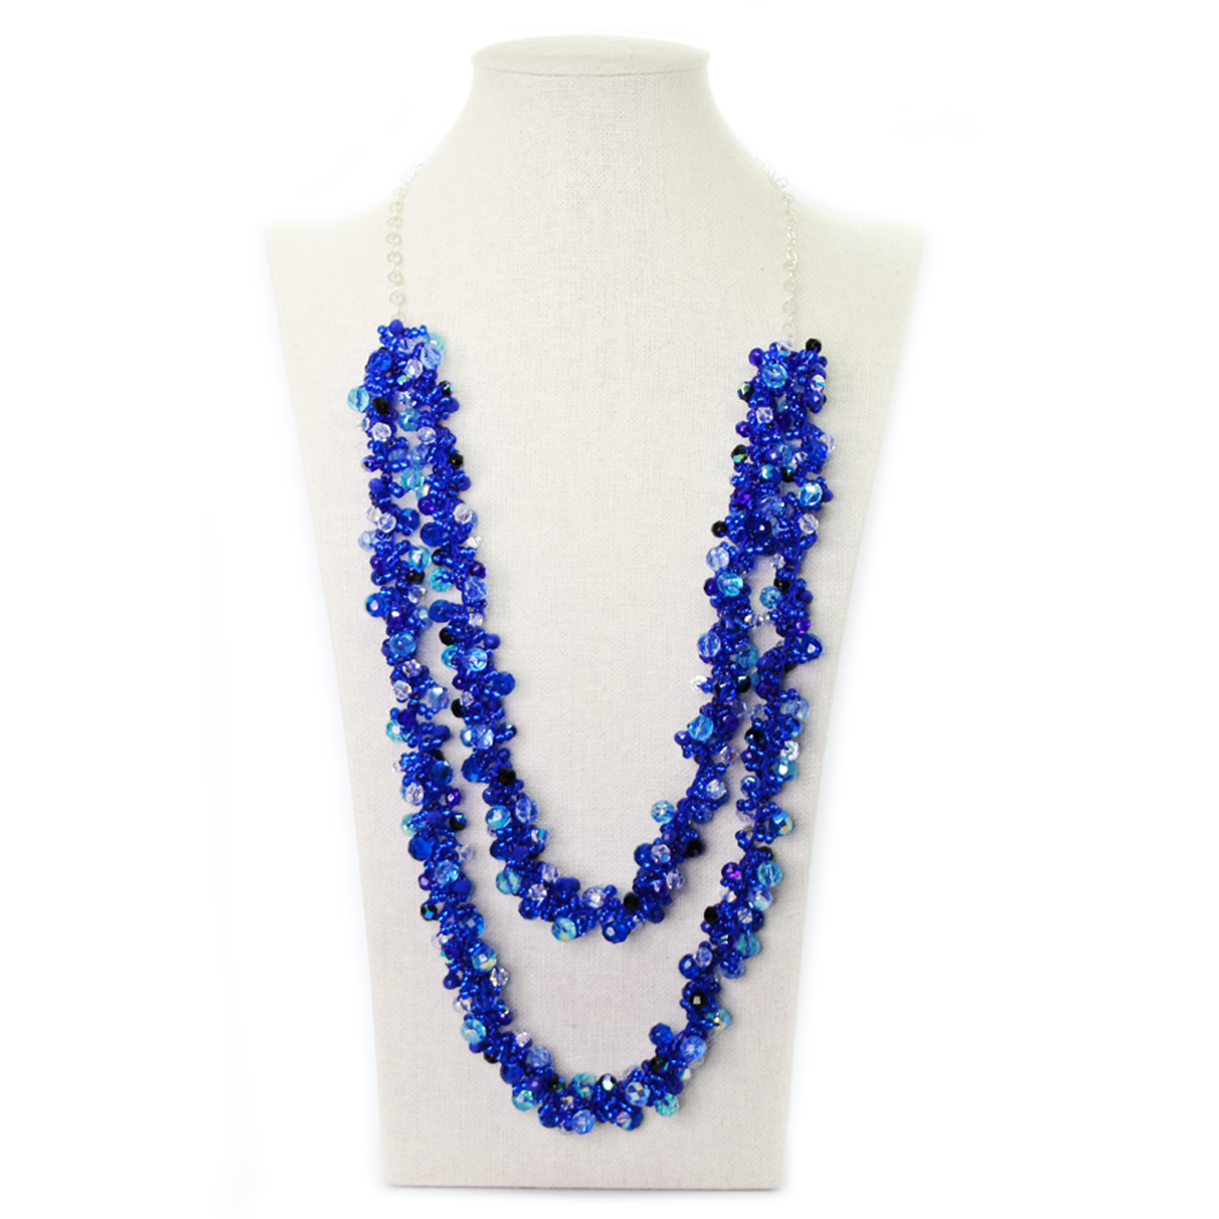 Nando Medina. Blued Cascade Necklace. Seduction Collection.